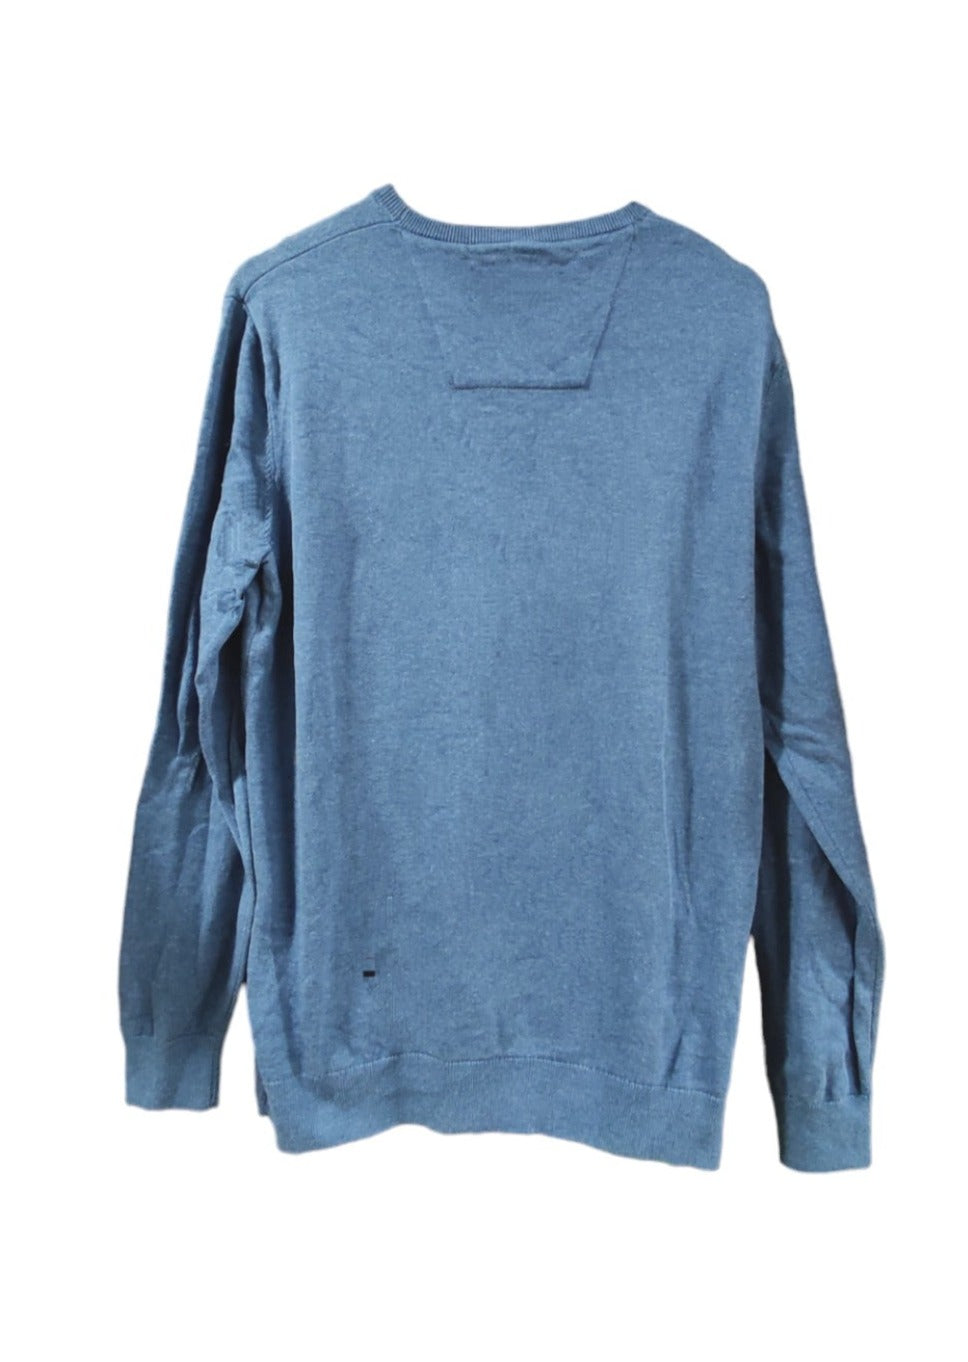 Πλεκτή Ανδρική Μπλούζα/Πουλόβερ TOM TAILOR σε Σιέλ χρώμα (Medium)